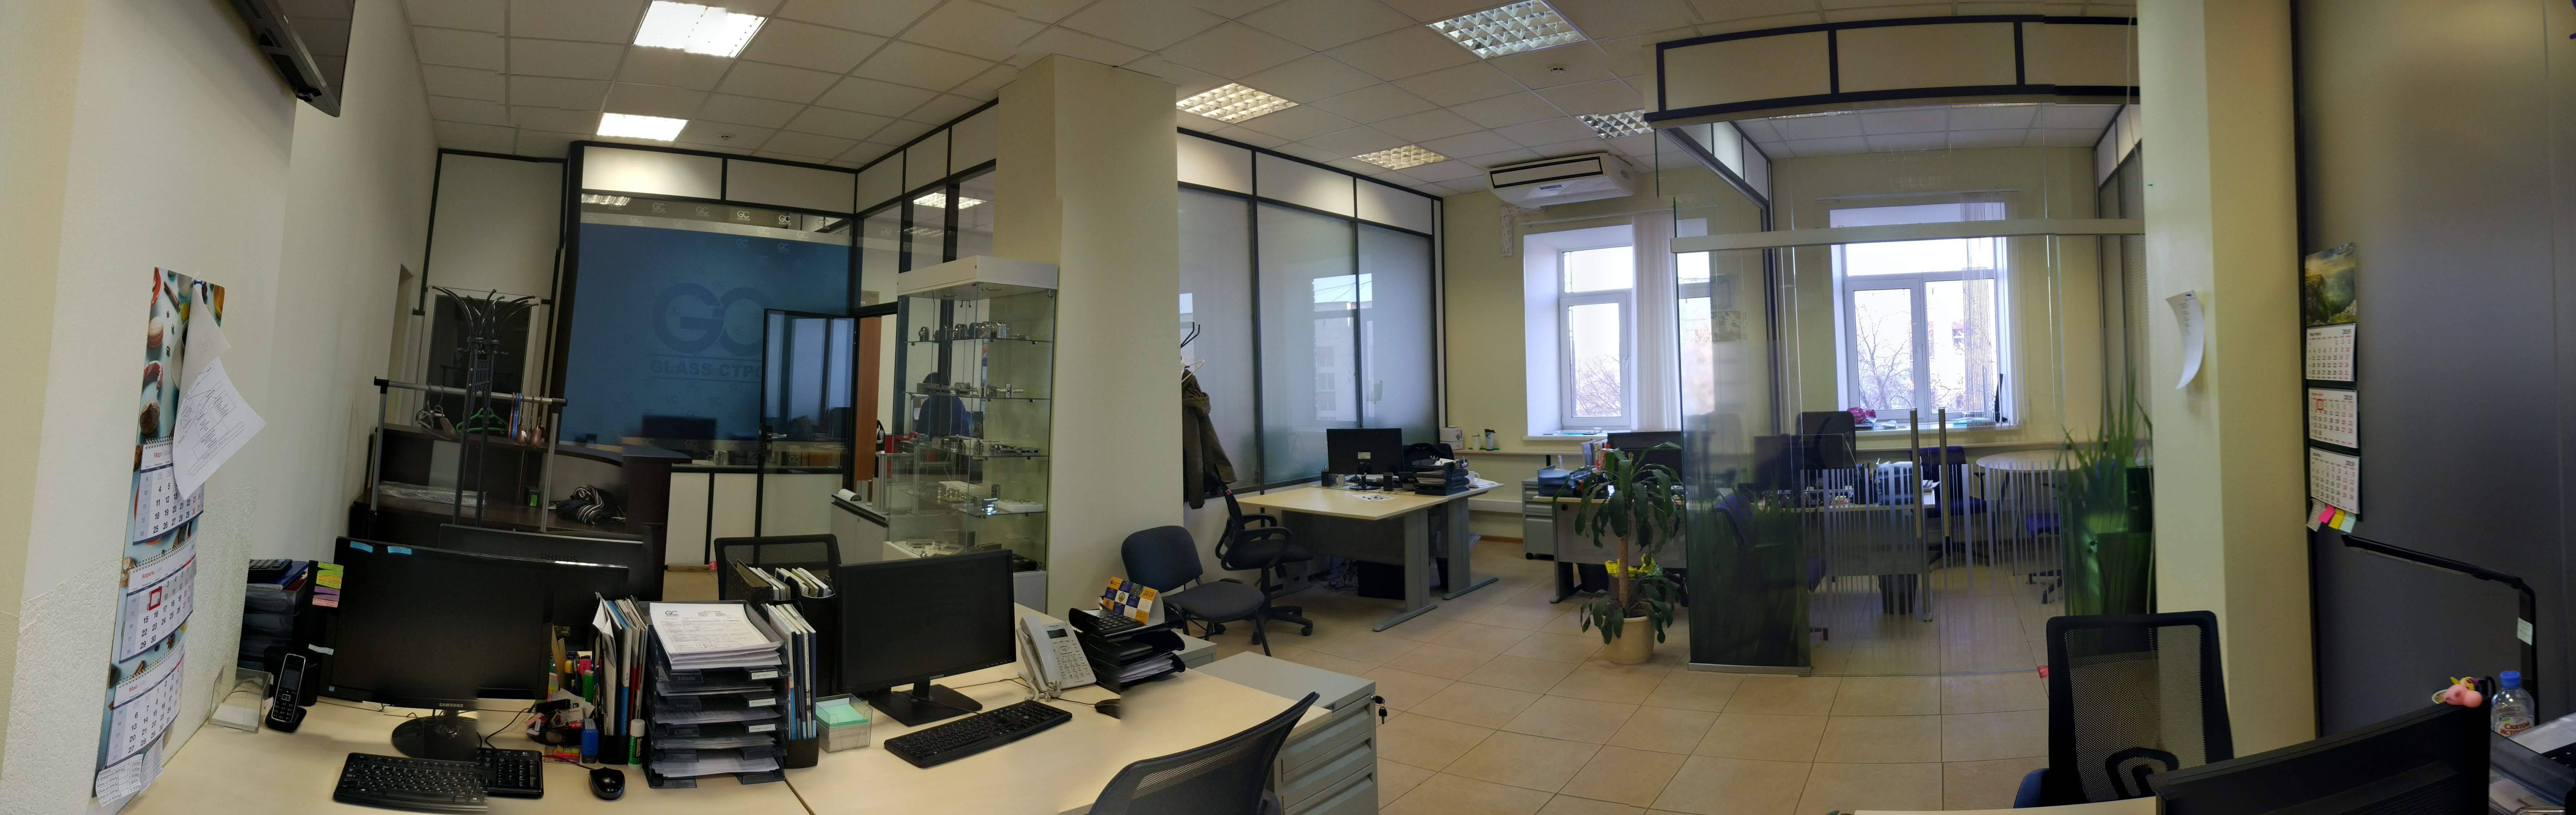 Панорамное фото офиса компании